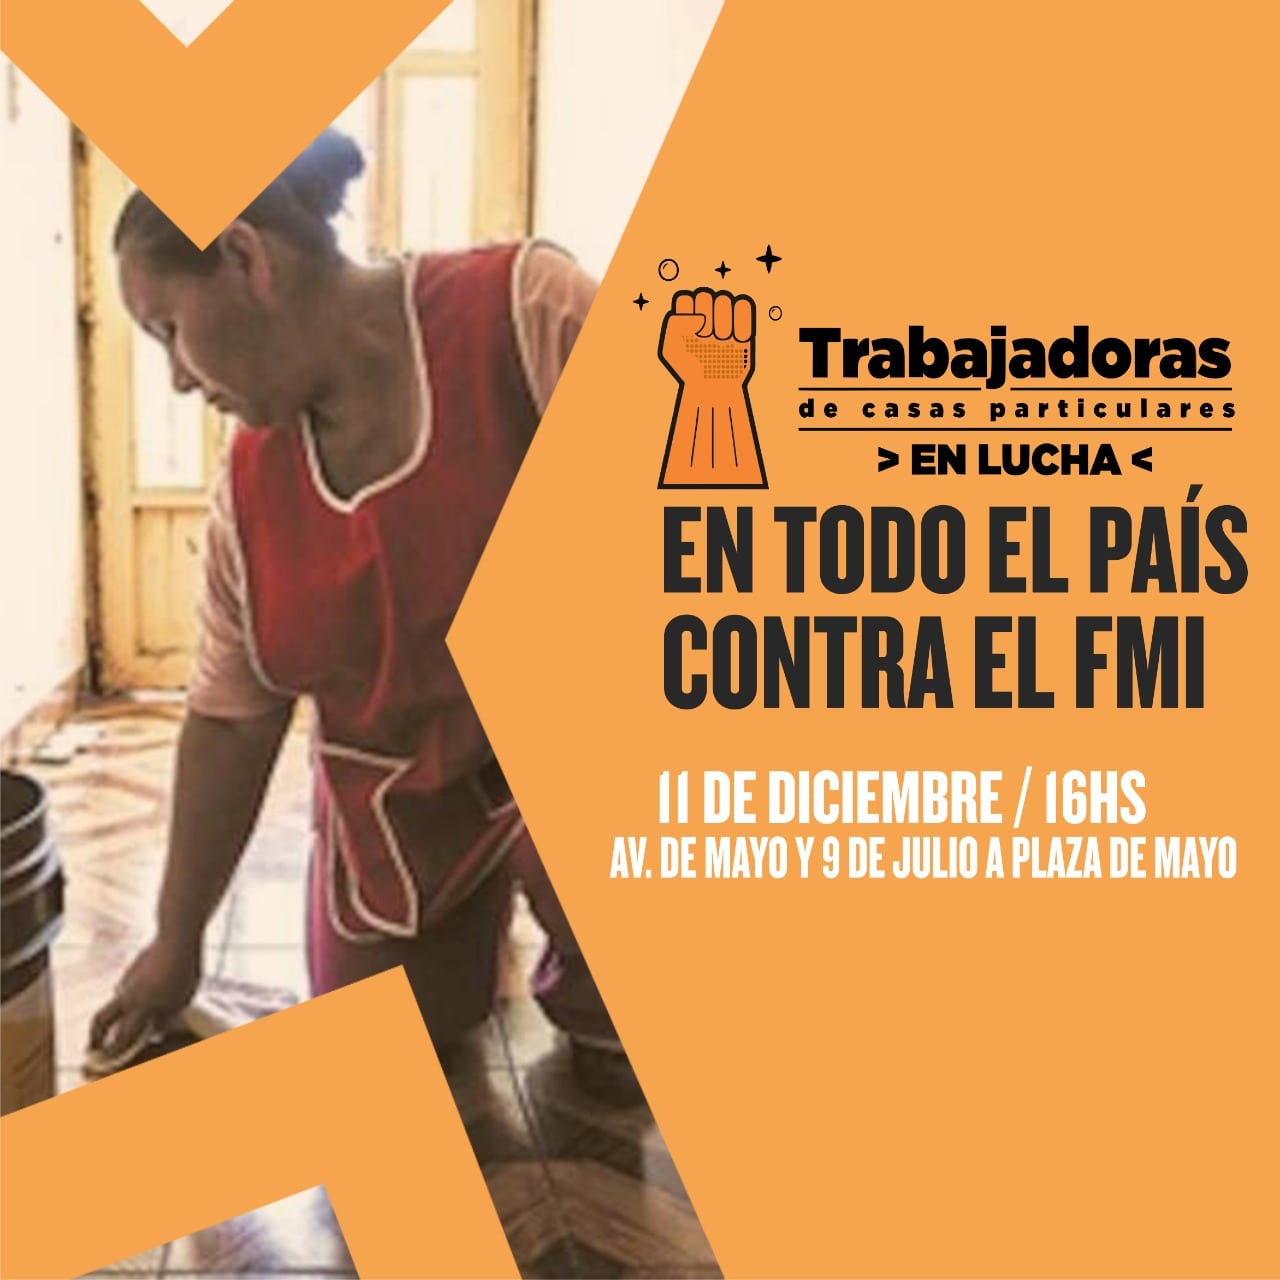 Sábado 11 las trabajadoras de casas particulares participarán del acto contra el FMI